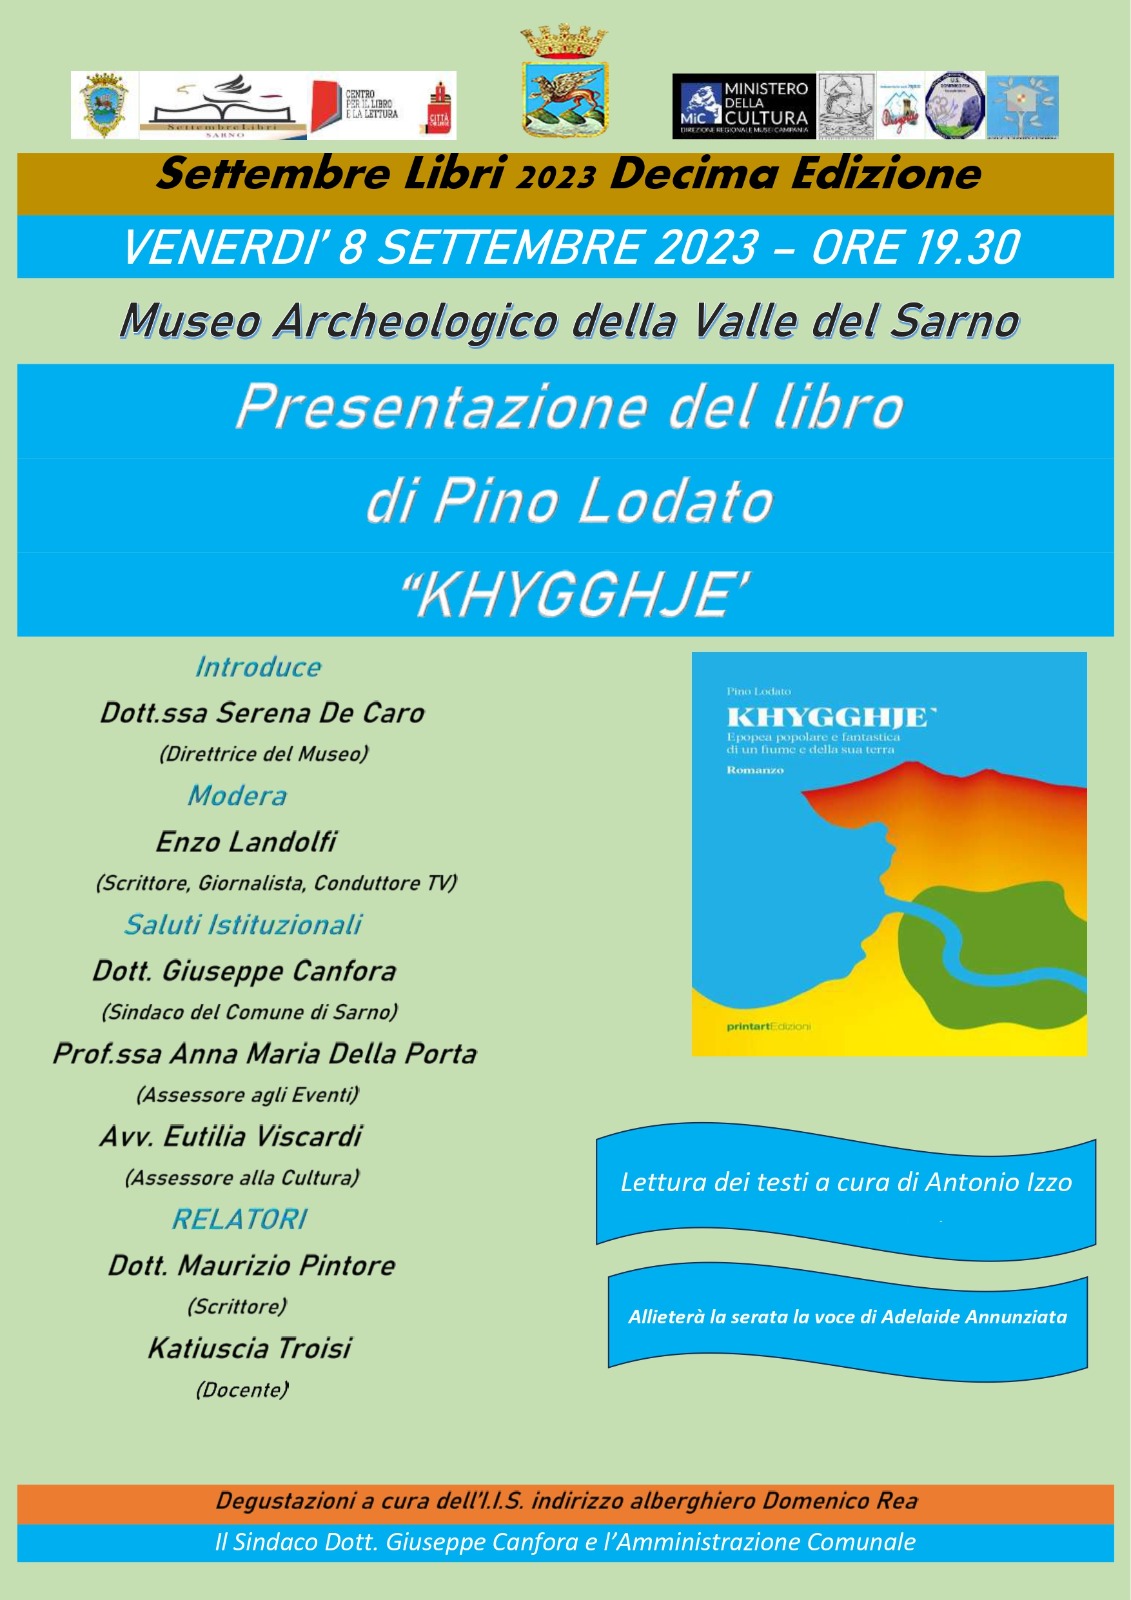 Sarno: a Museo Archeologico Valle del Sarno, presentazione libro di Pino Lodato “KHYGGHJE’